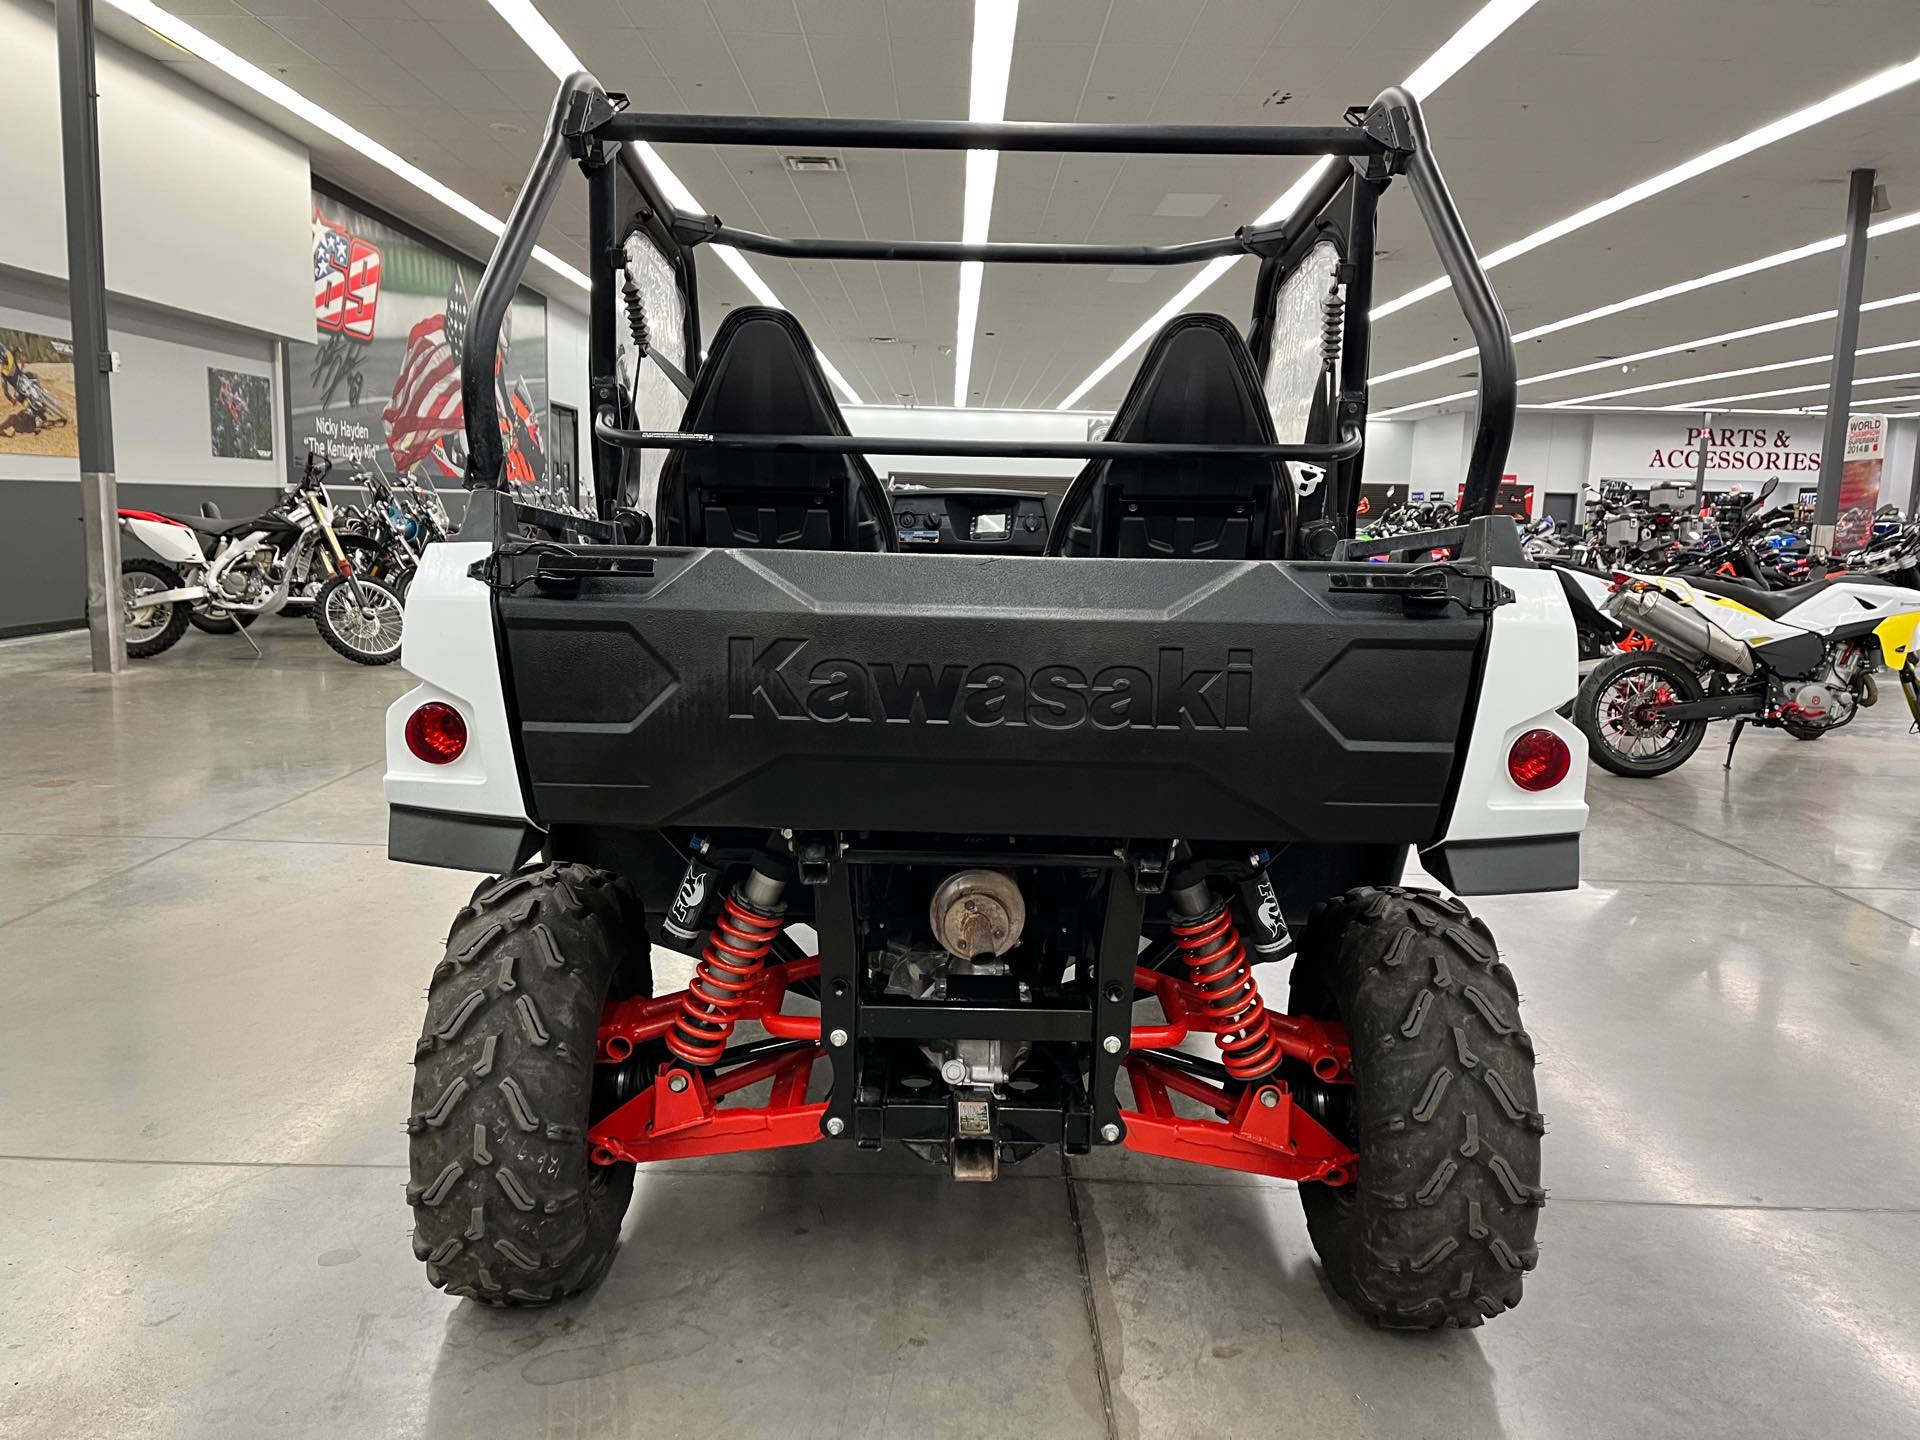 2018 Kawasaki Teryx Base at Aces Motorcycles - Denver